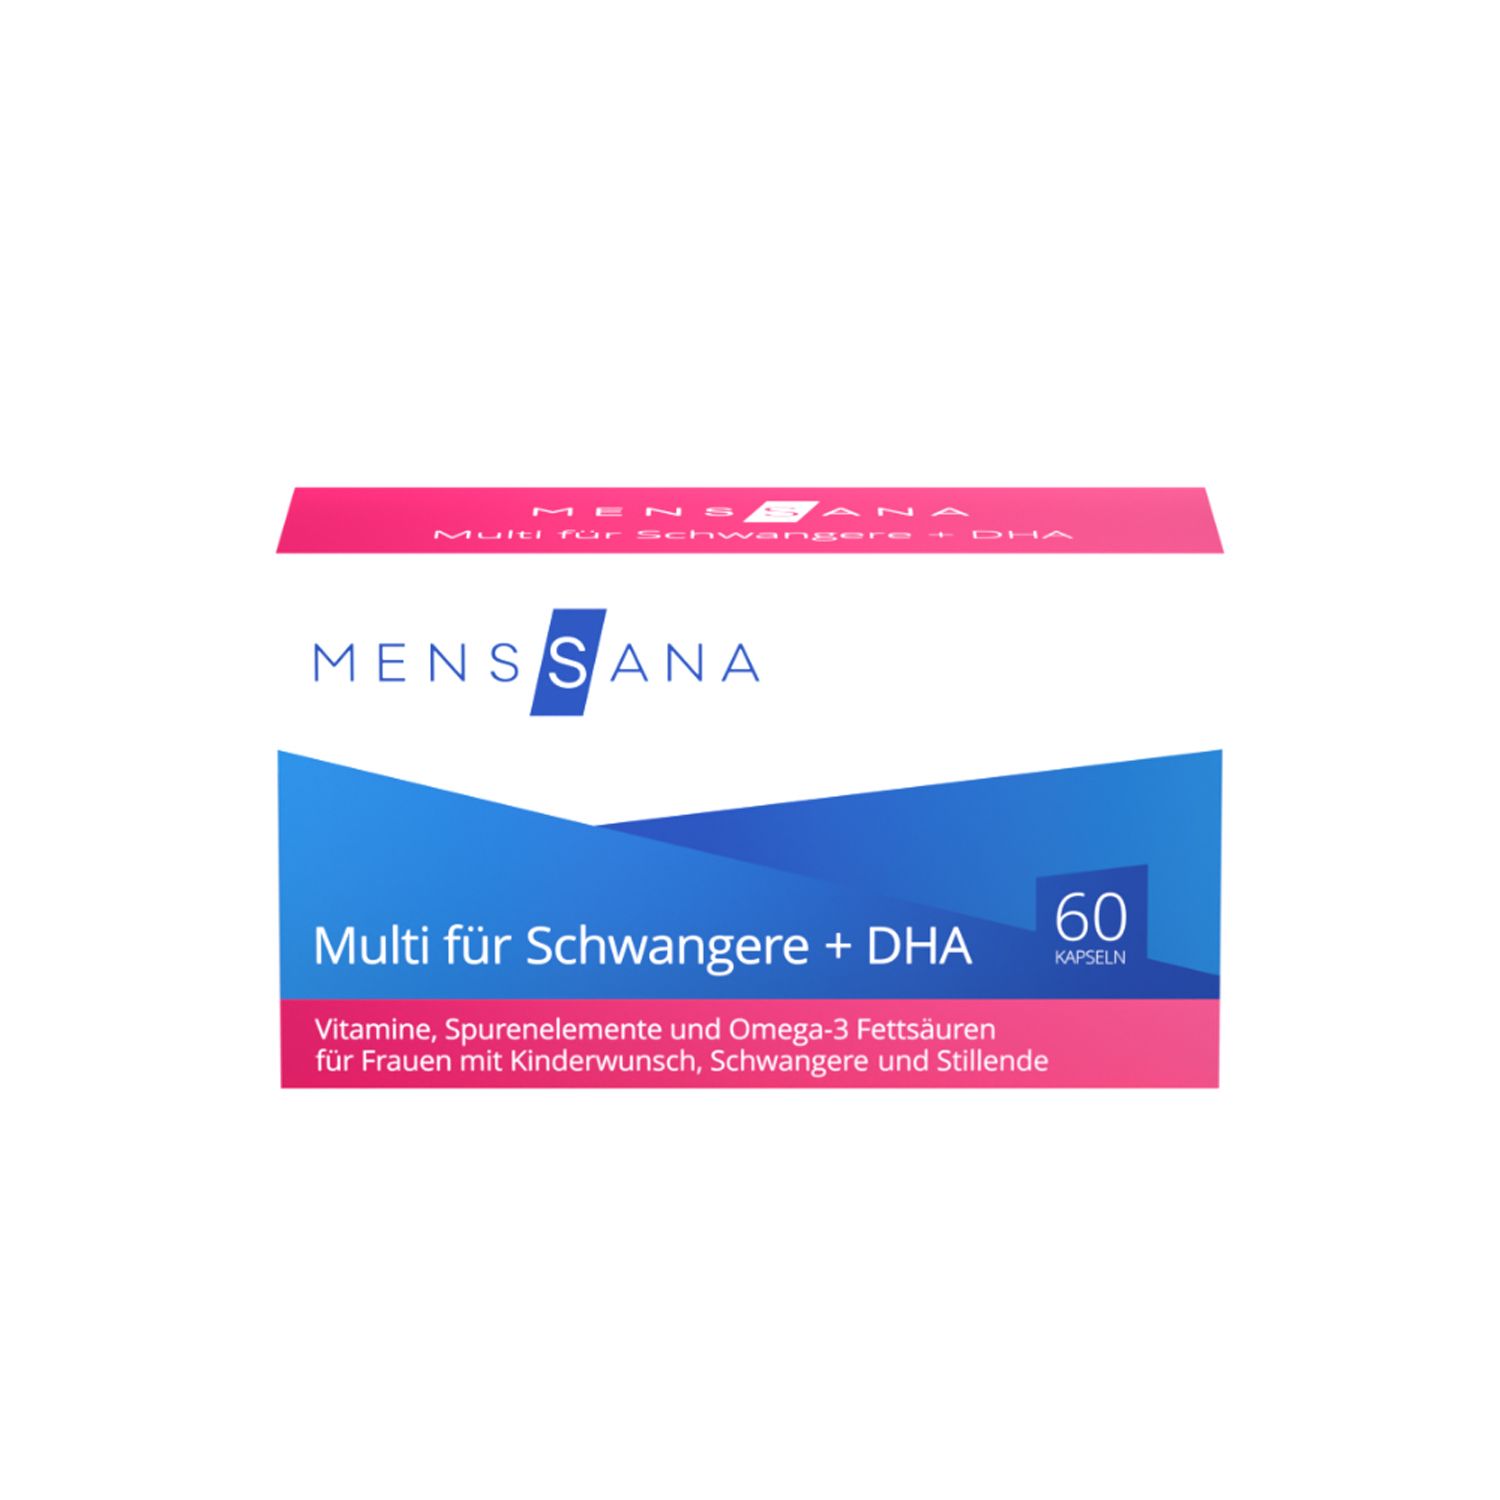 Menssana Multi für Schwangere + DHA